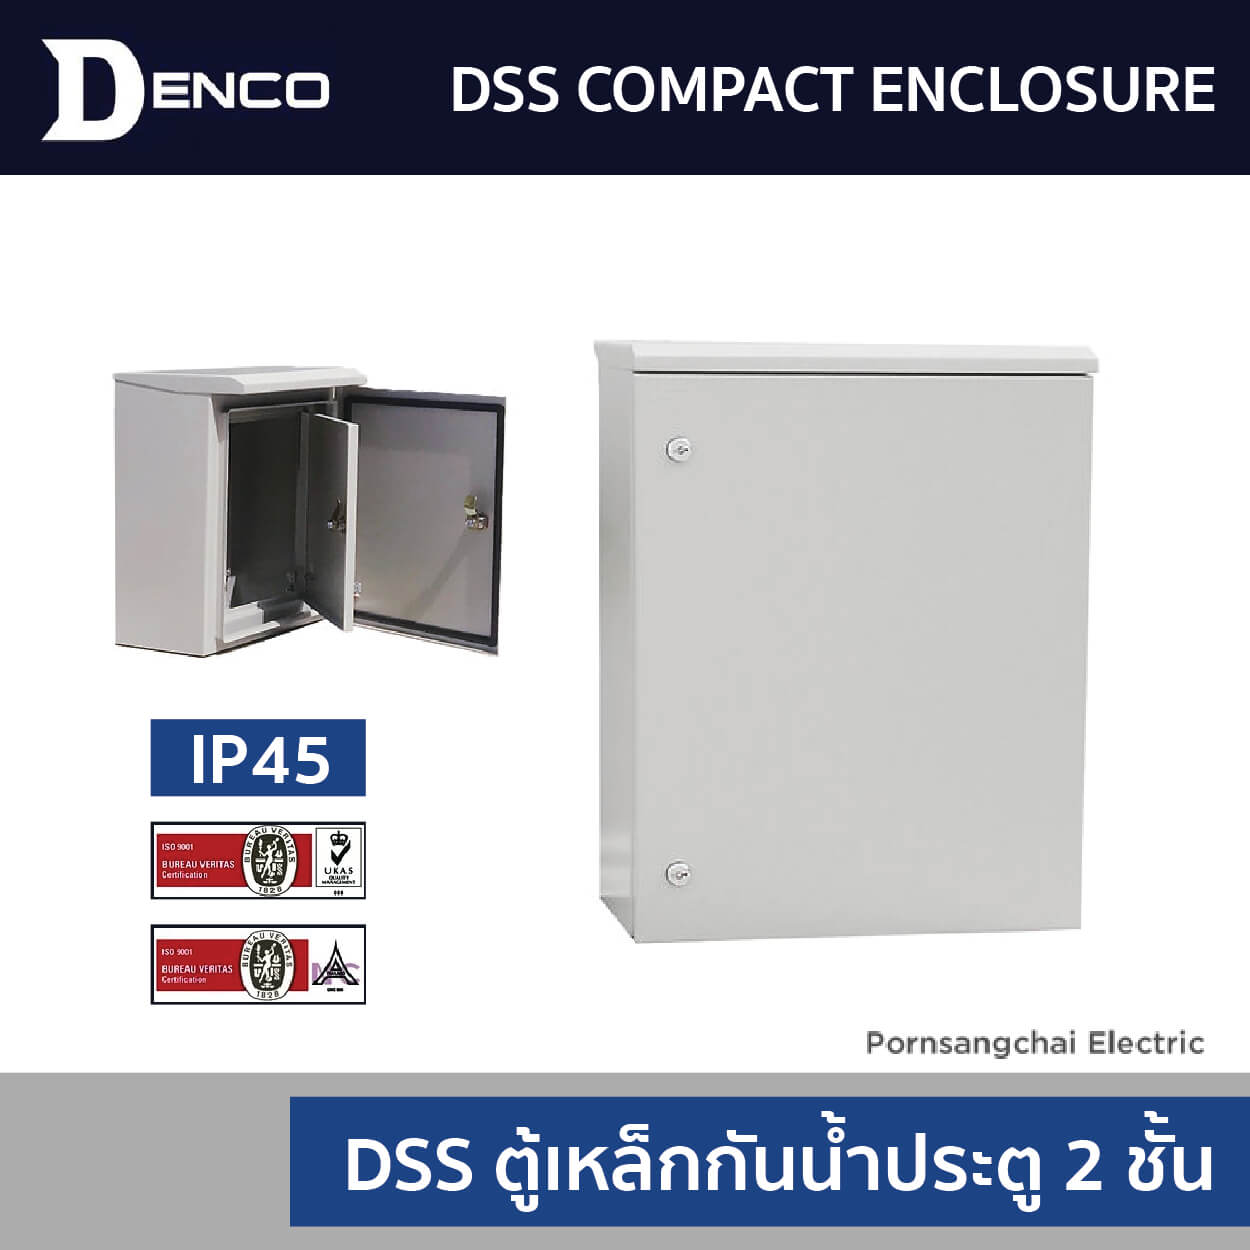 DSS Compact Enclosure